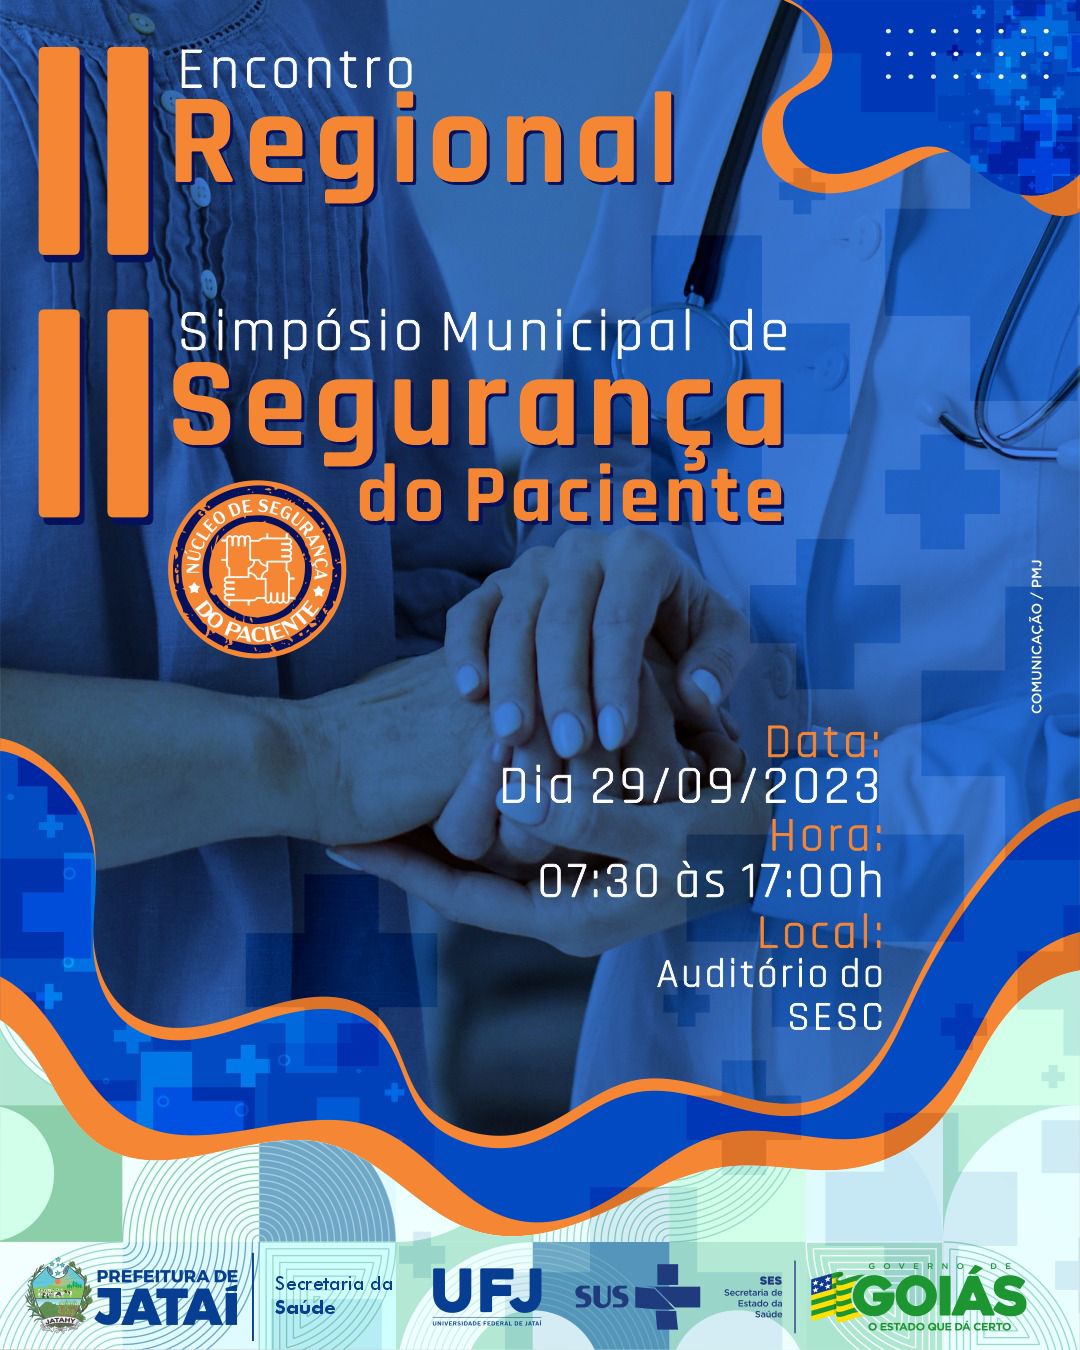 Atividades de Extensão Palestras, Seminários, Simpósios, Conferências, Pedro Nunes Filho